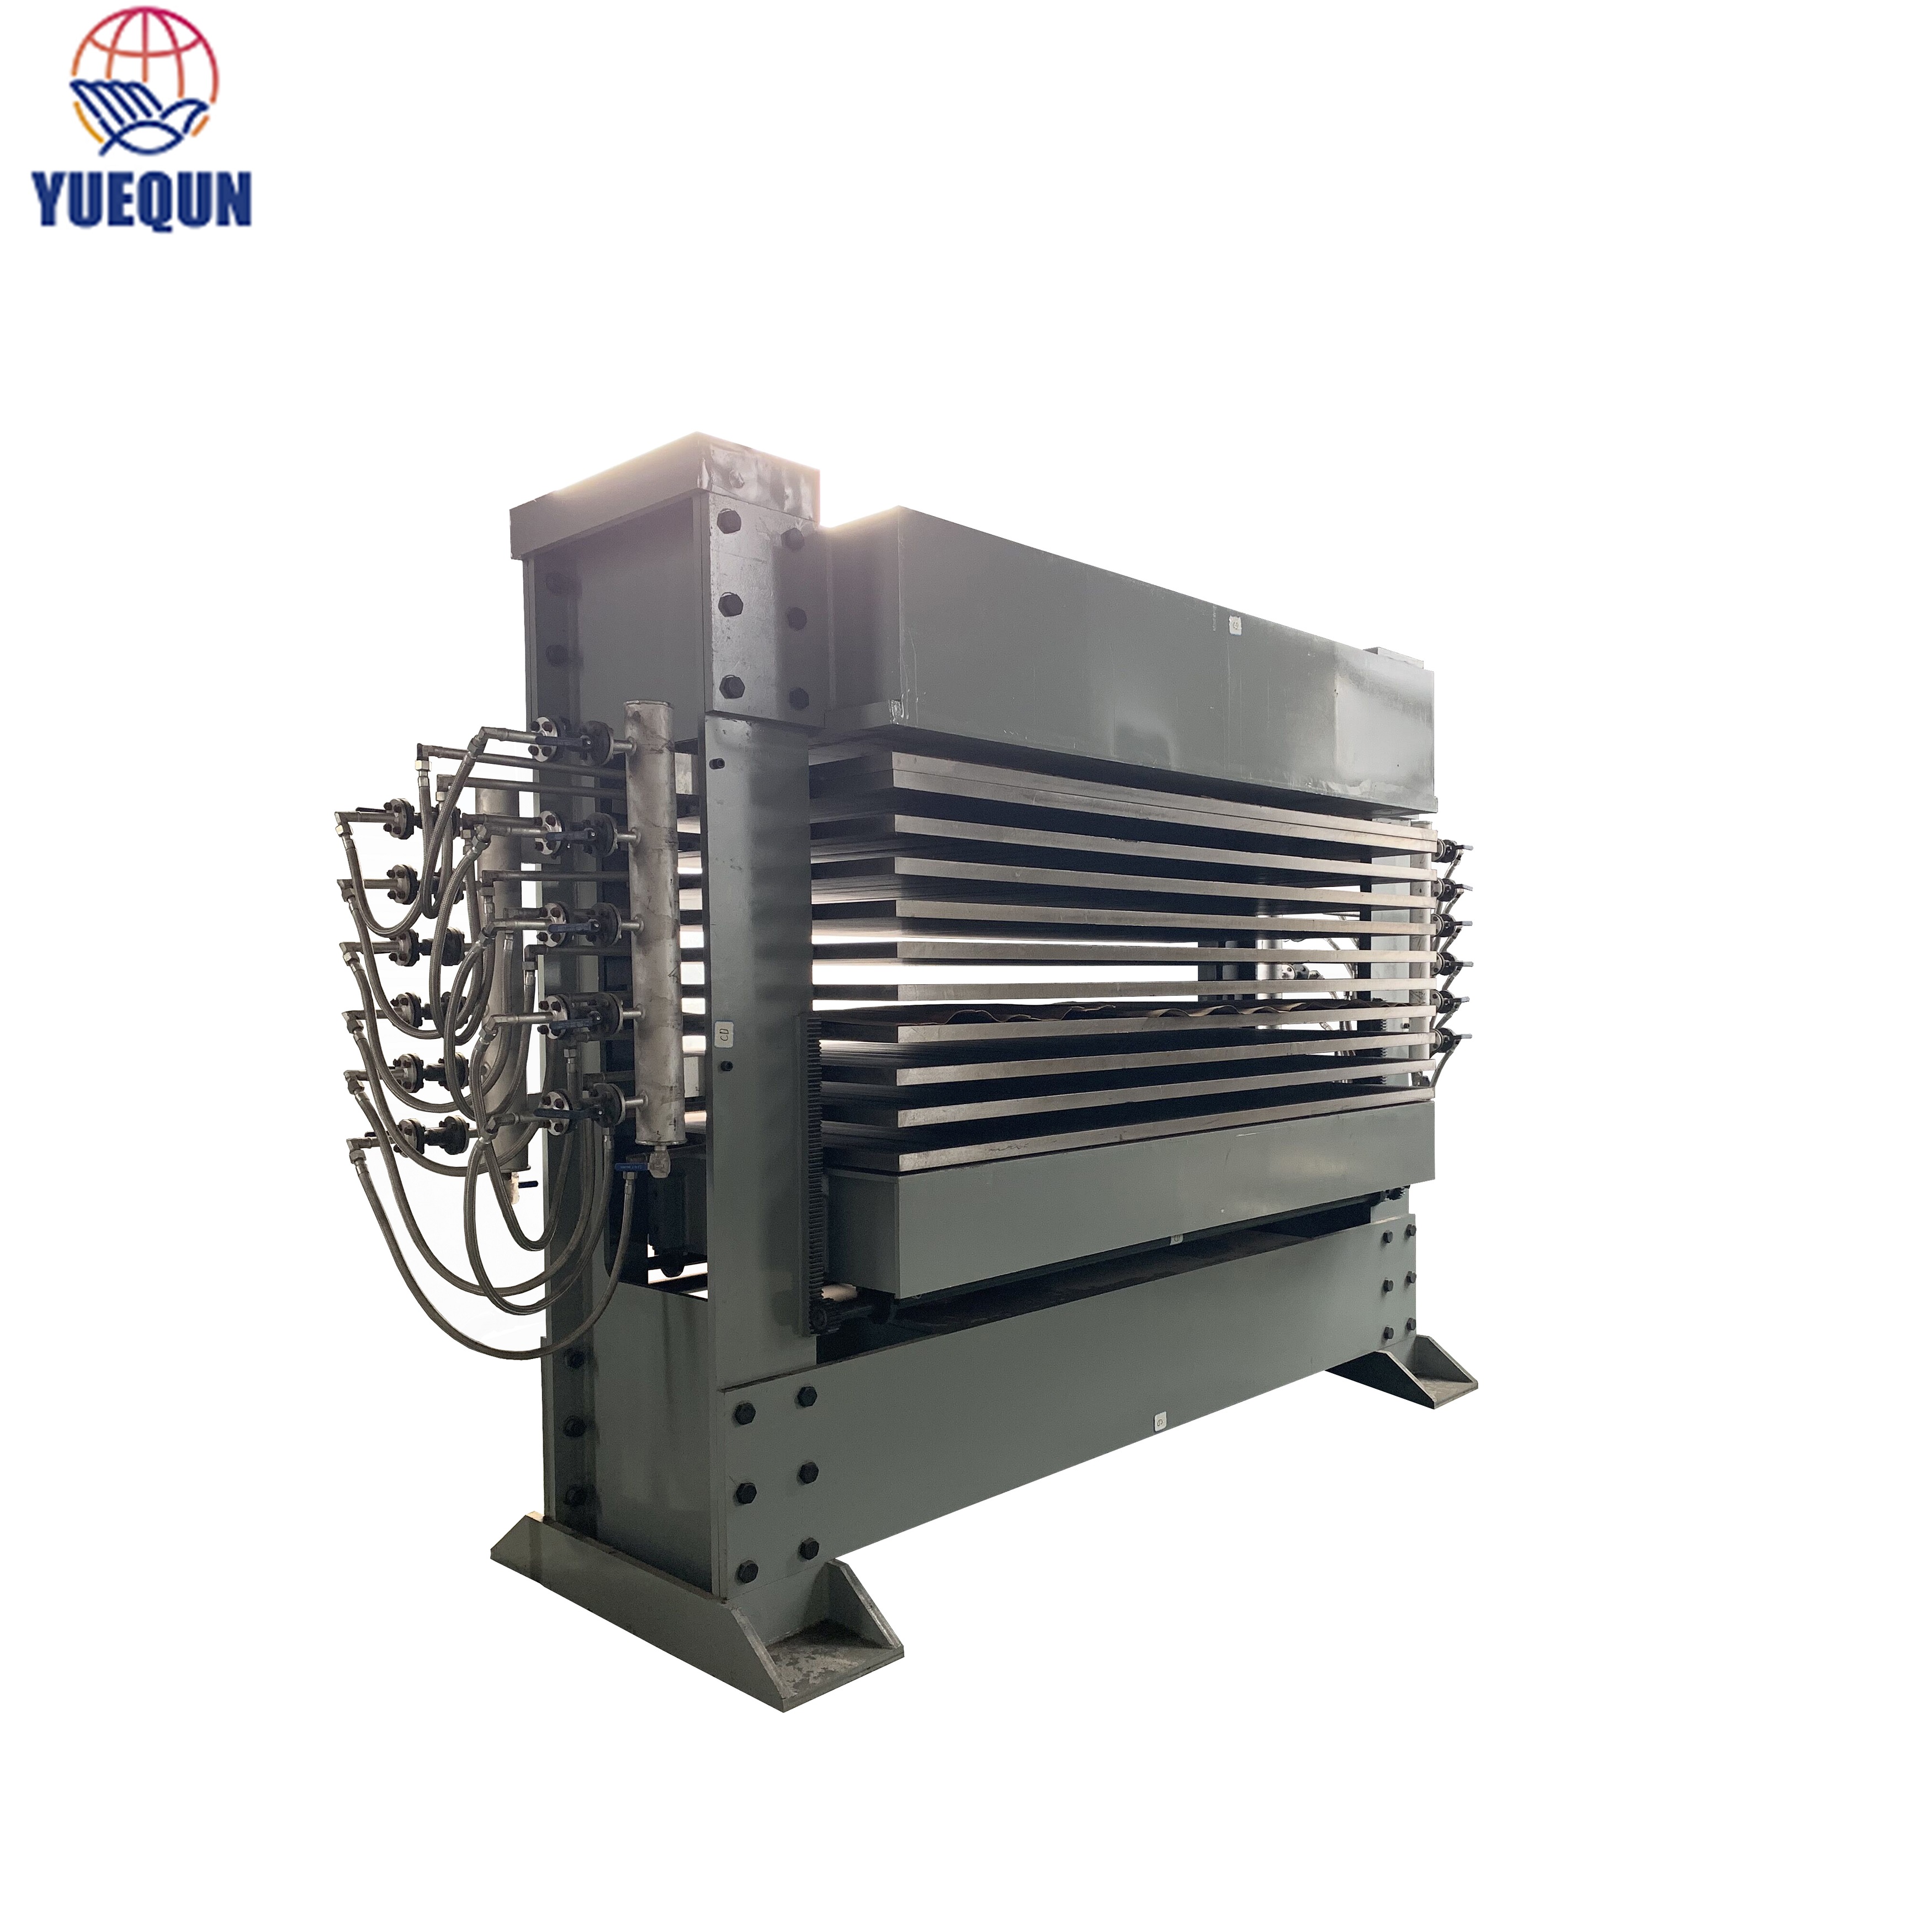 Square Tube Type Dryer Machine, Hot Press Type Veneer Hot Press Drying Machine for Veneer or Plywood Making machine